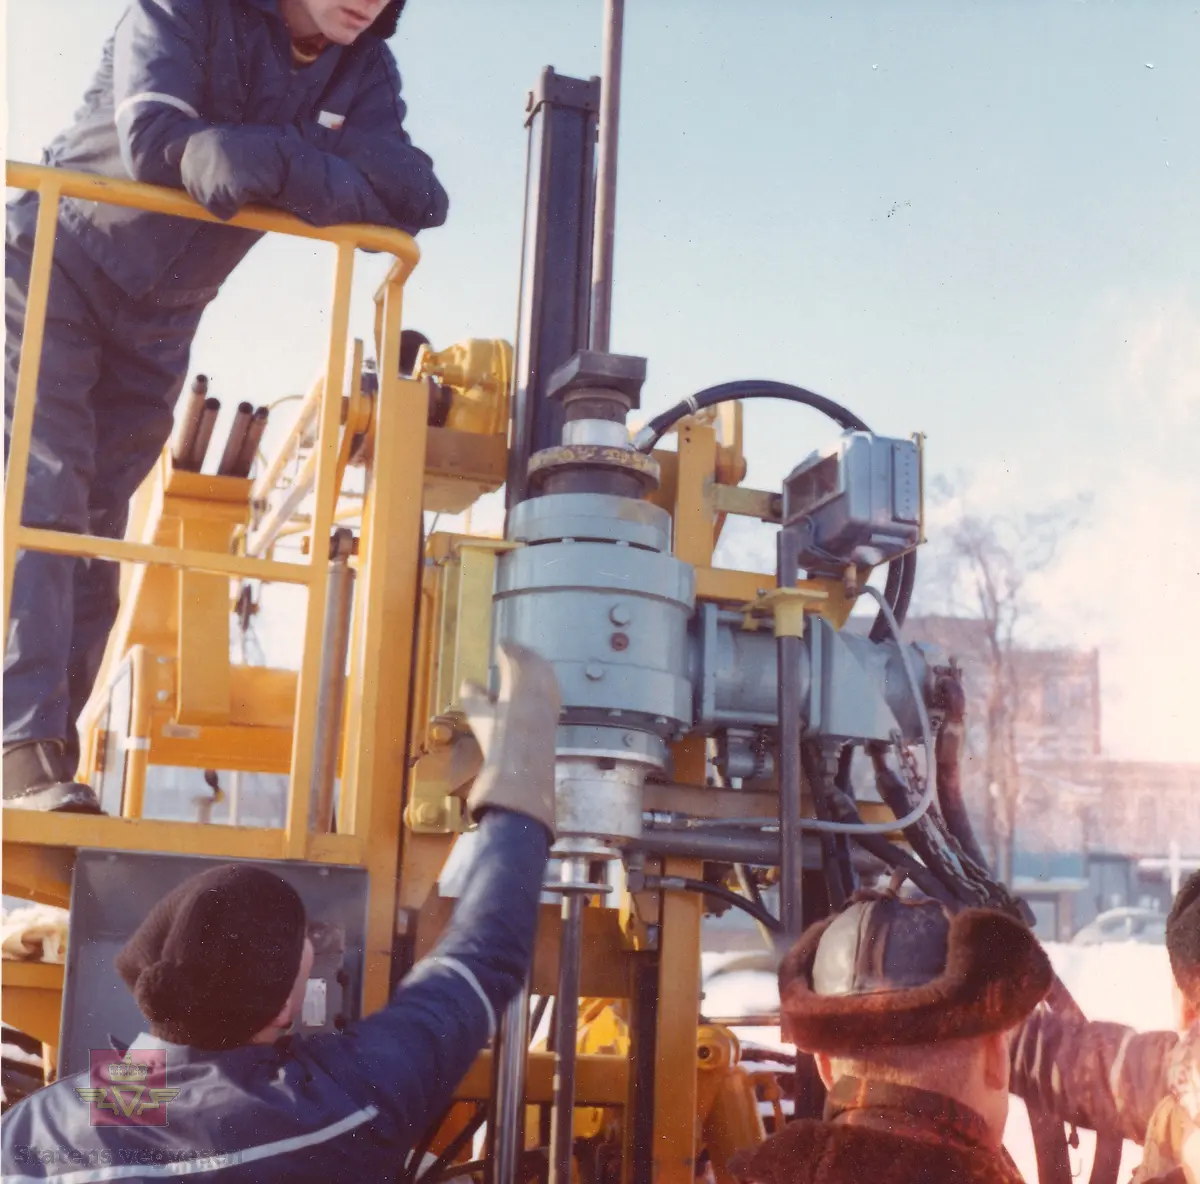 Kurs i bruk av "Hydroriggen" (grunnboringstraktor) utenfor Veglaboratoriet i Oslo februar 1970. 

Utviklingen av “Hydroriggen”på slutten av 1960-t revolusjonerte grunnboringsarbeidet. Det manuelle arbeidet ble redusert, den var lettere å flytte og hadde større kapasitet og evne til nedtrengning. En ny metode kalt dreietrykksondering ble tatt i bruk: Man målte hvor mye kraft som måtte til for å trykke borstengene ned i bakken med konstant hastighet og rotasjon. Riggen kunne også benyttes til andre sonderingsmetoder, prøvetaking og vingeboring.
Hydroriggen hadde begrenset framkommelighet tiltross for at den var utstyrt med halvbelter.

 Kilde: Rapport nr: 2550, Teknologiavdelingen SVV: "Grunnboringsutstyr 1960-2000"